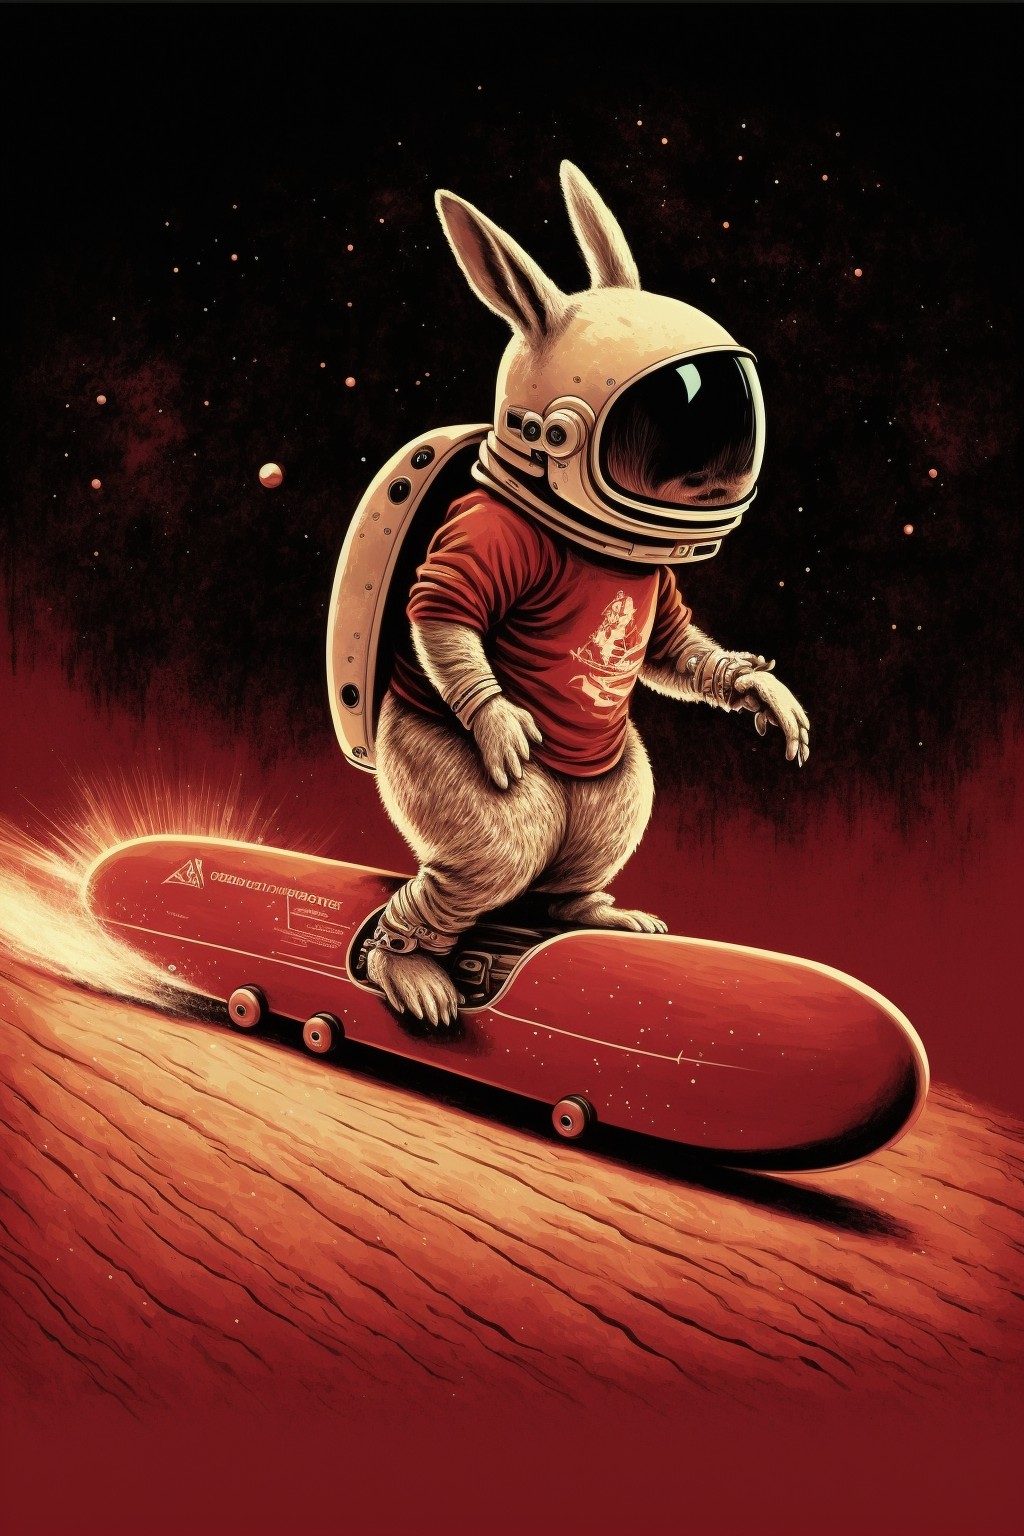 Rabbit skateboarding above the star ring